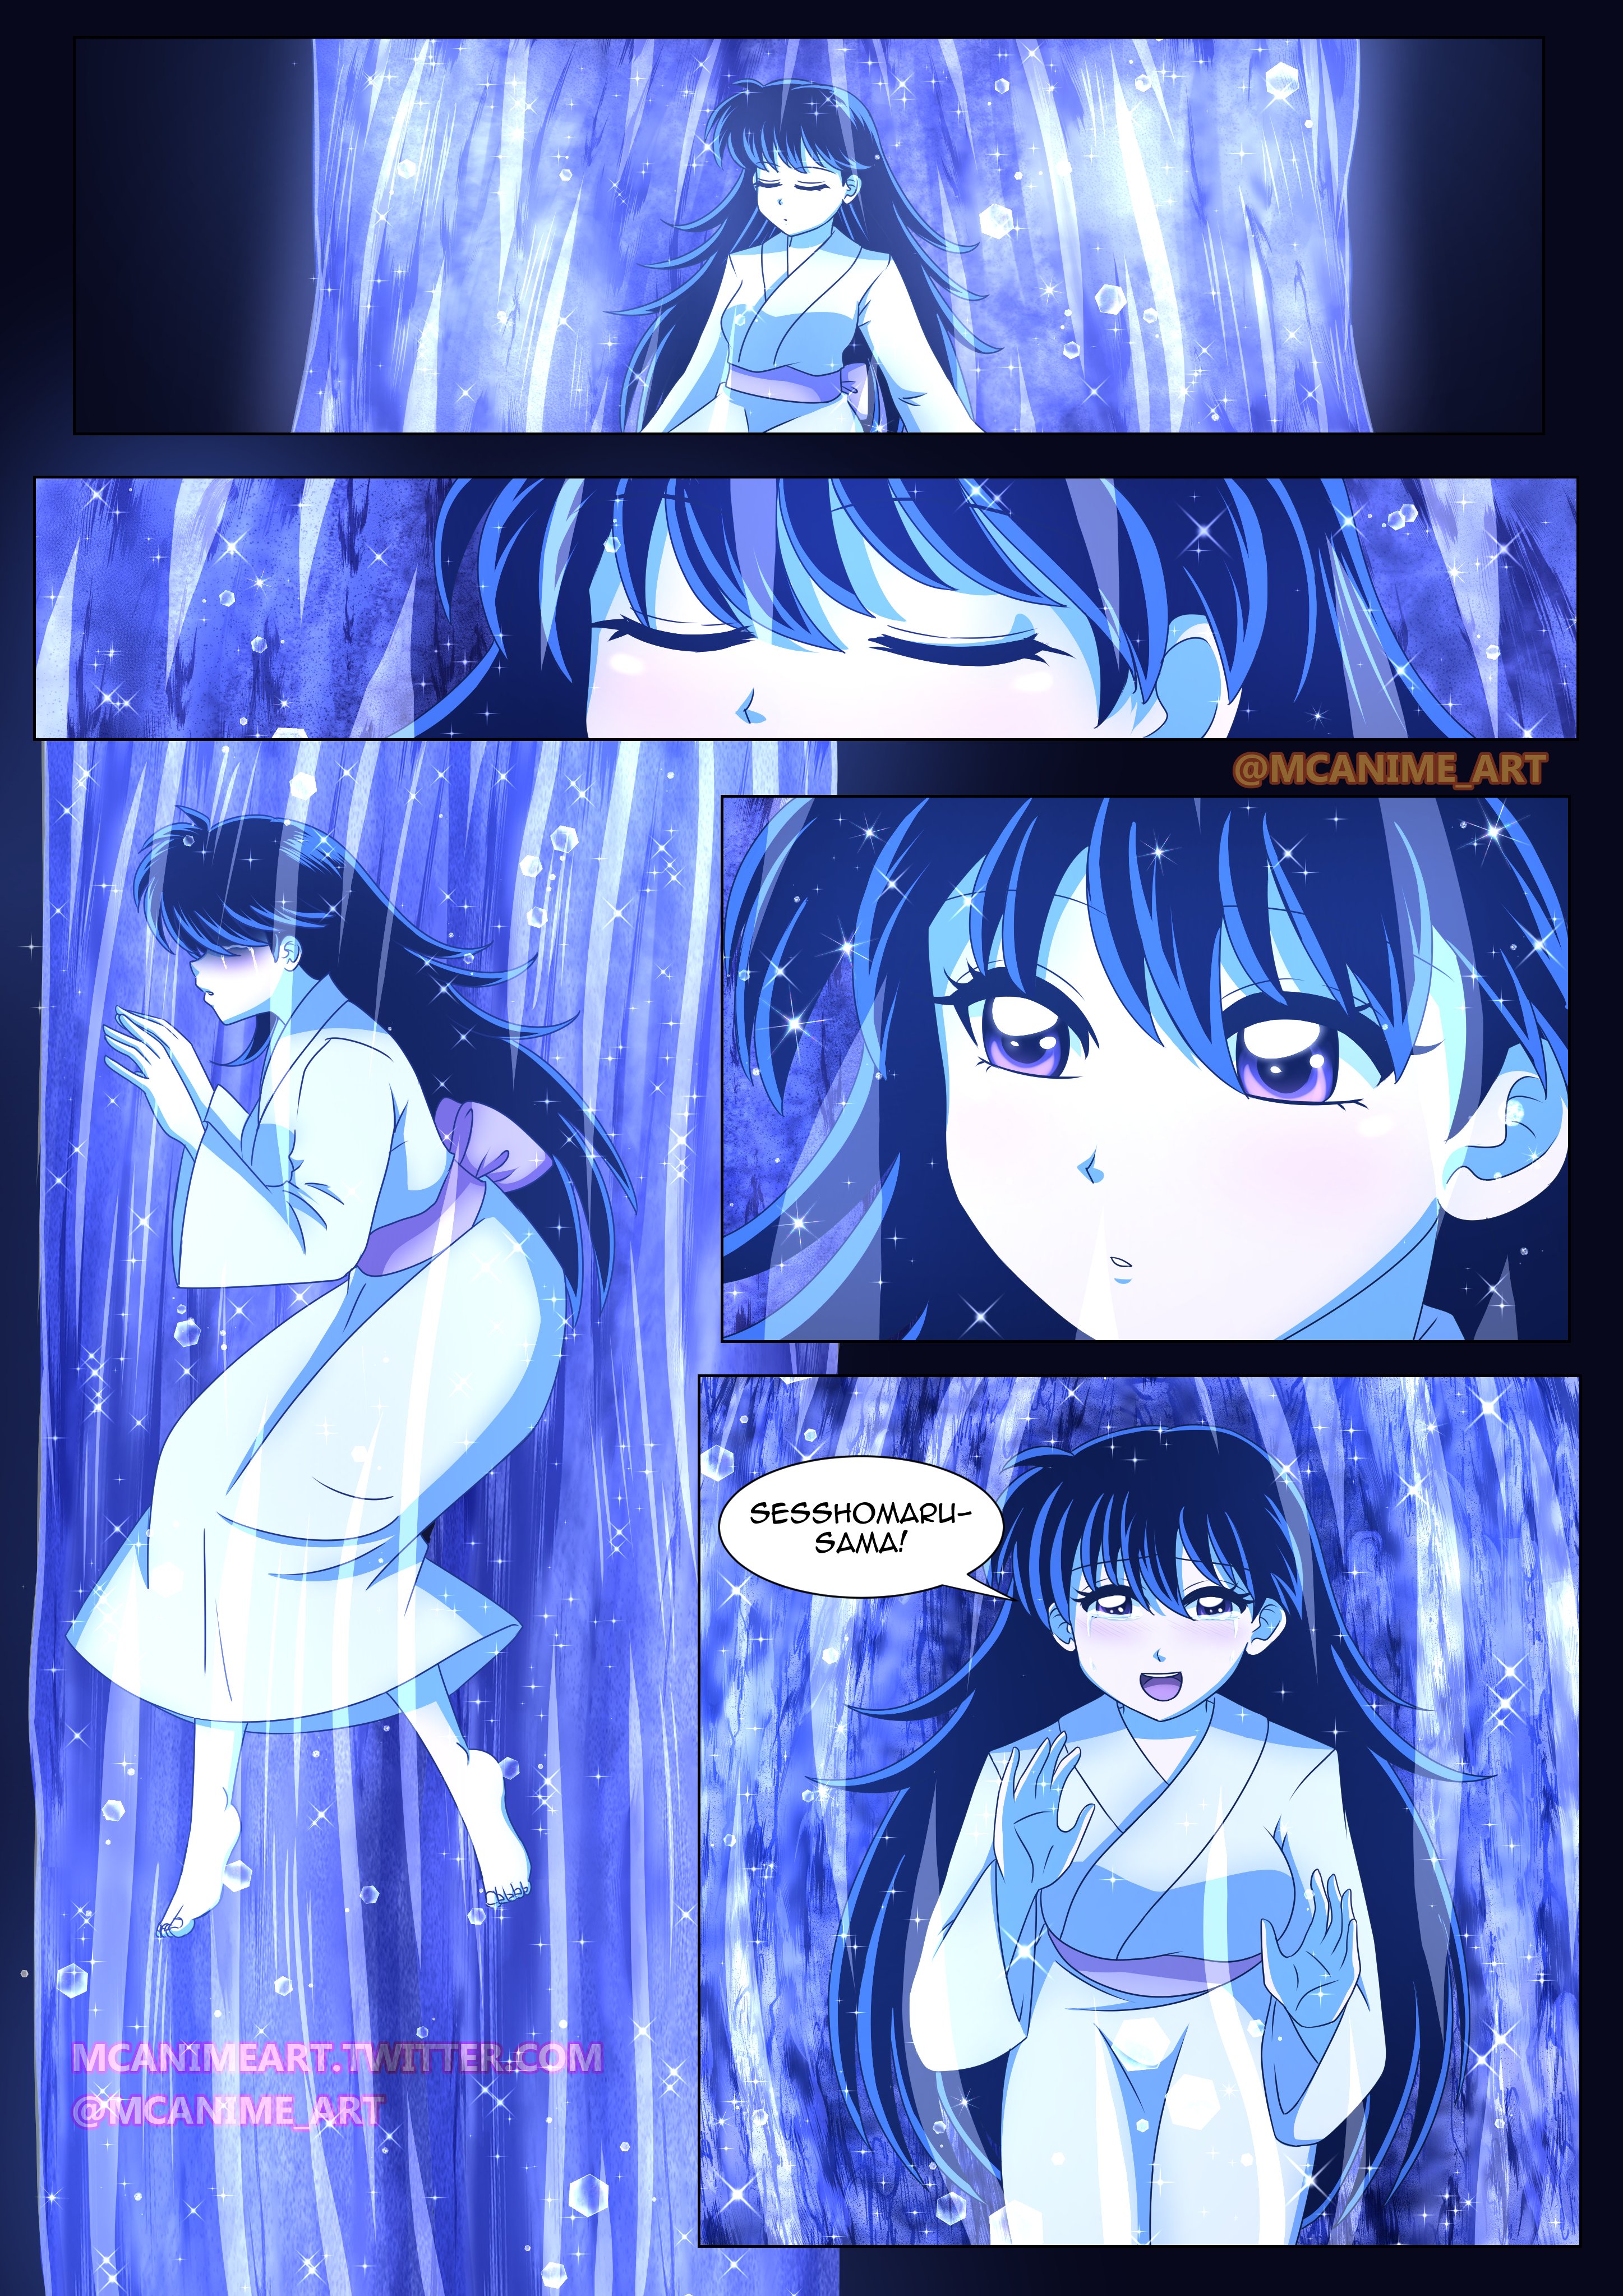 Yashahime: Princess Half-Demon  Sesshomaru and Rin reunite